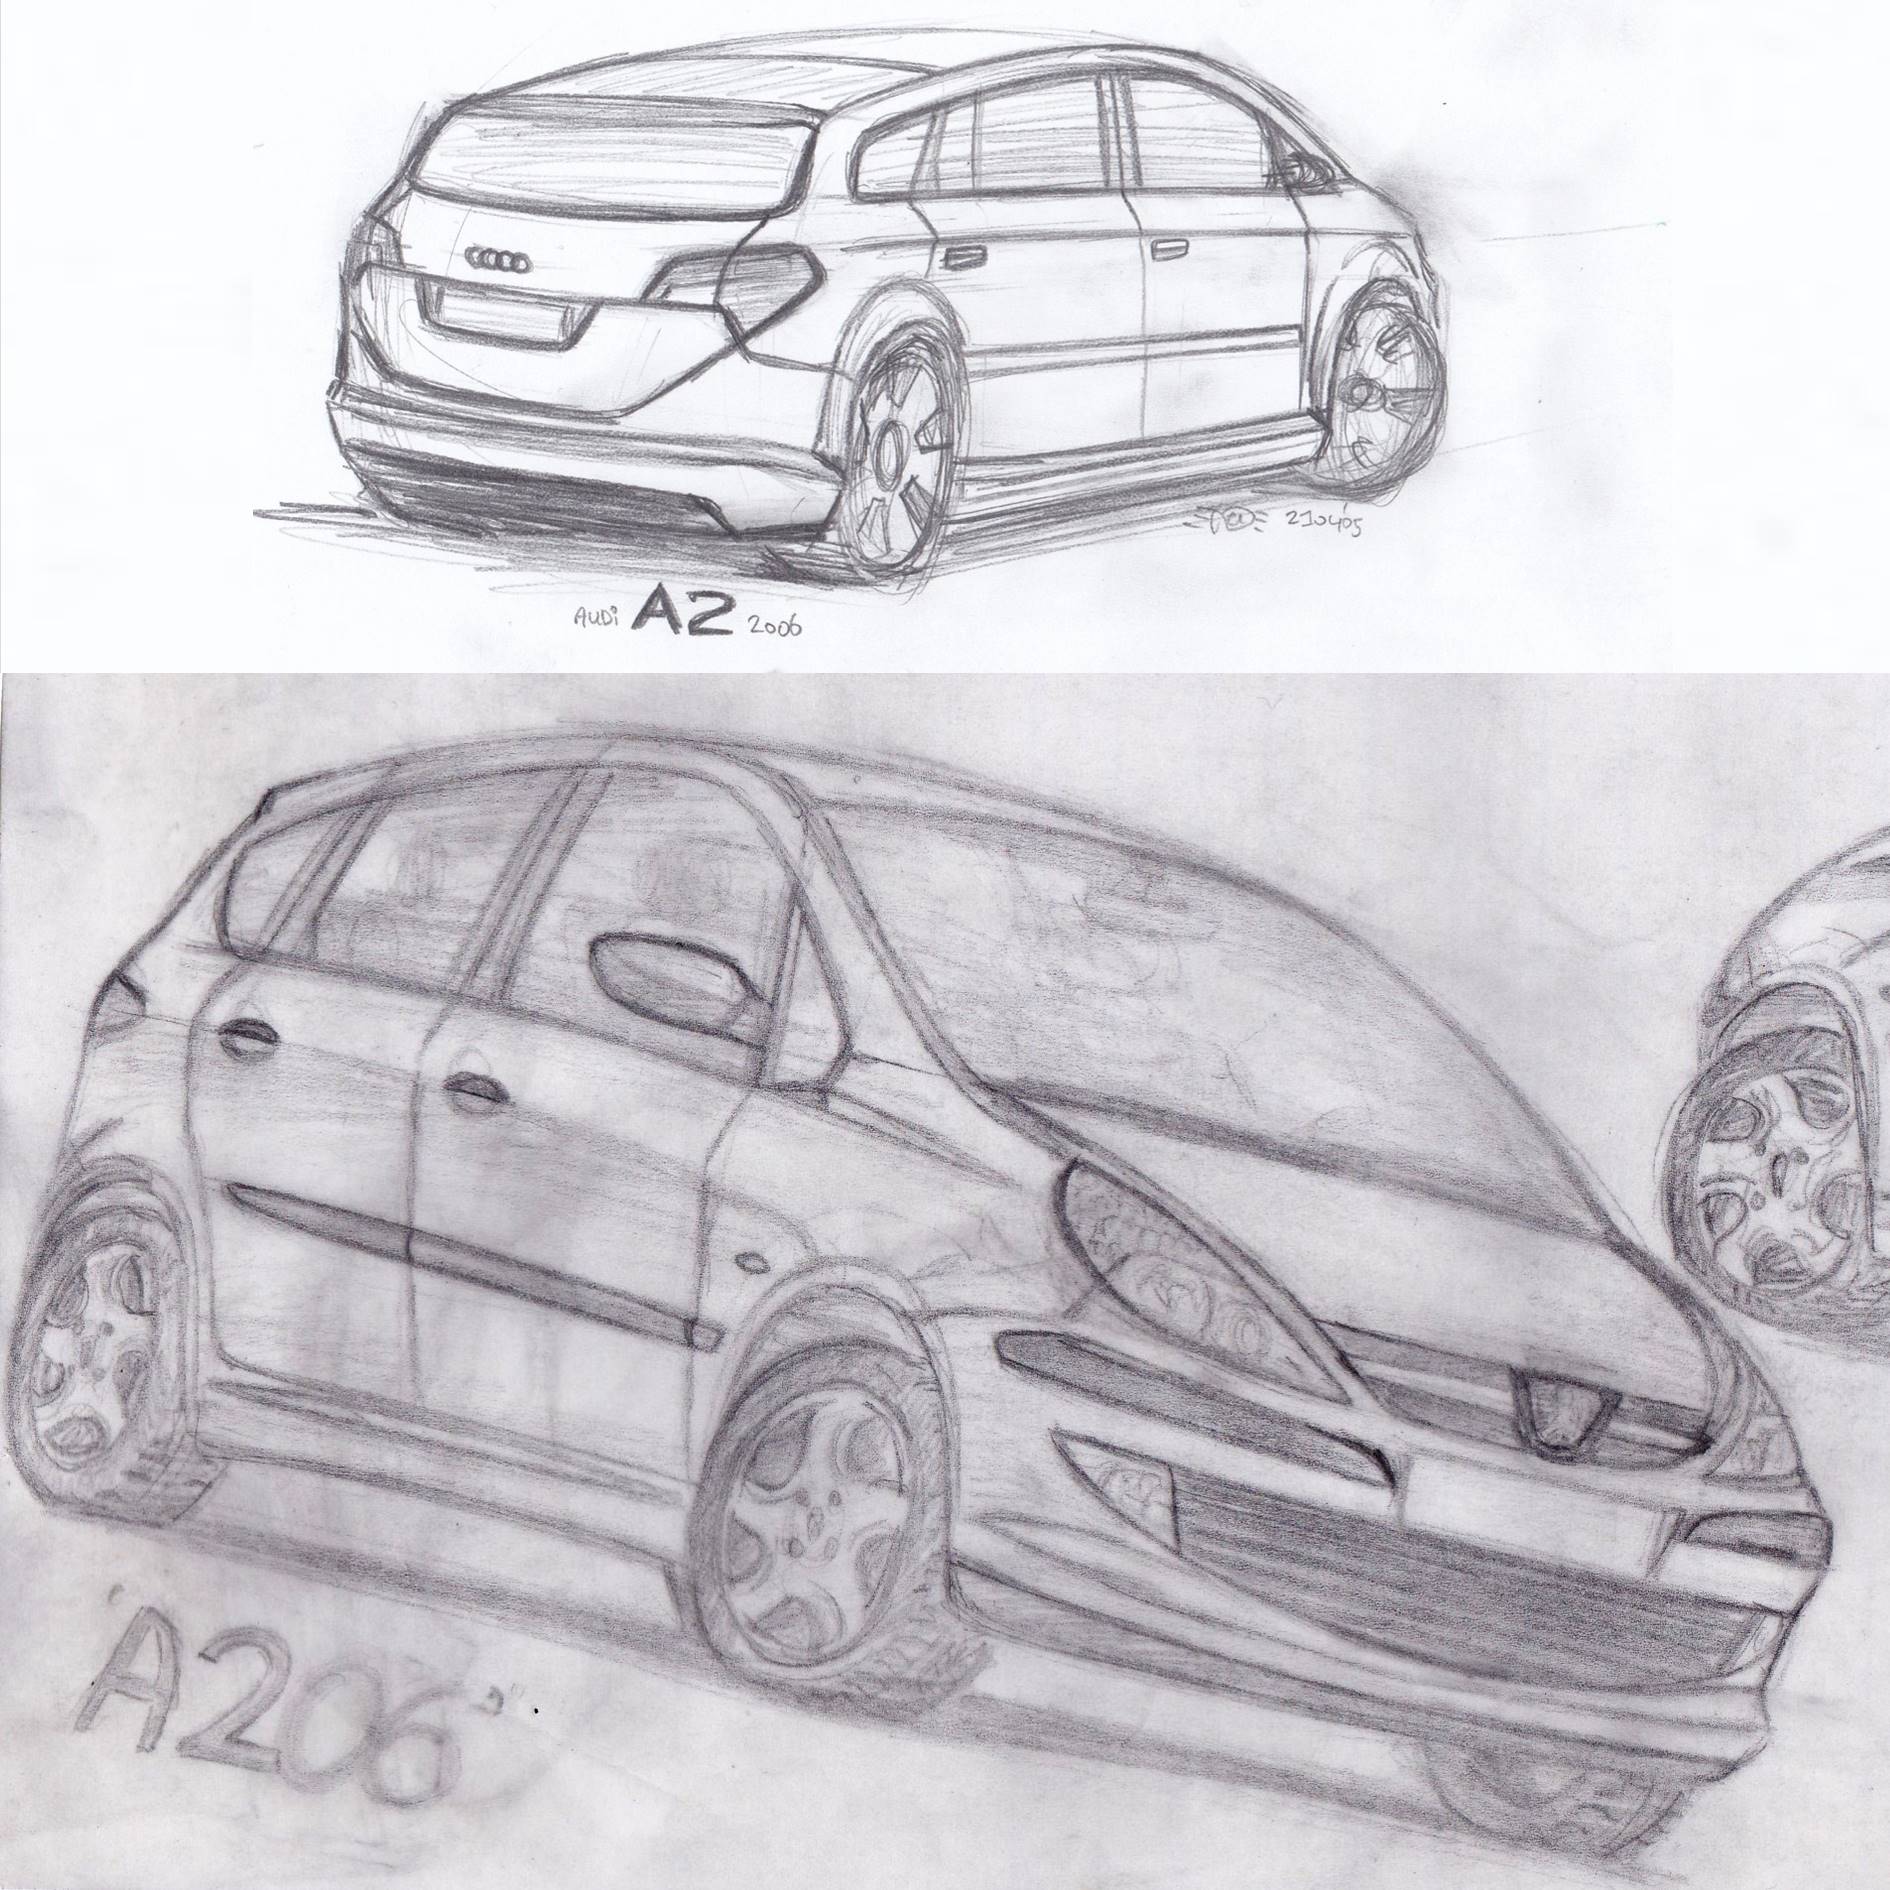 Pencil drawings of cars